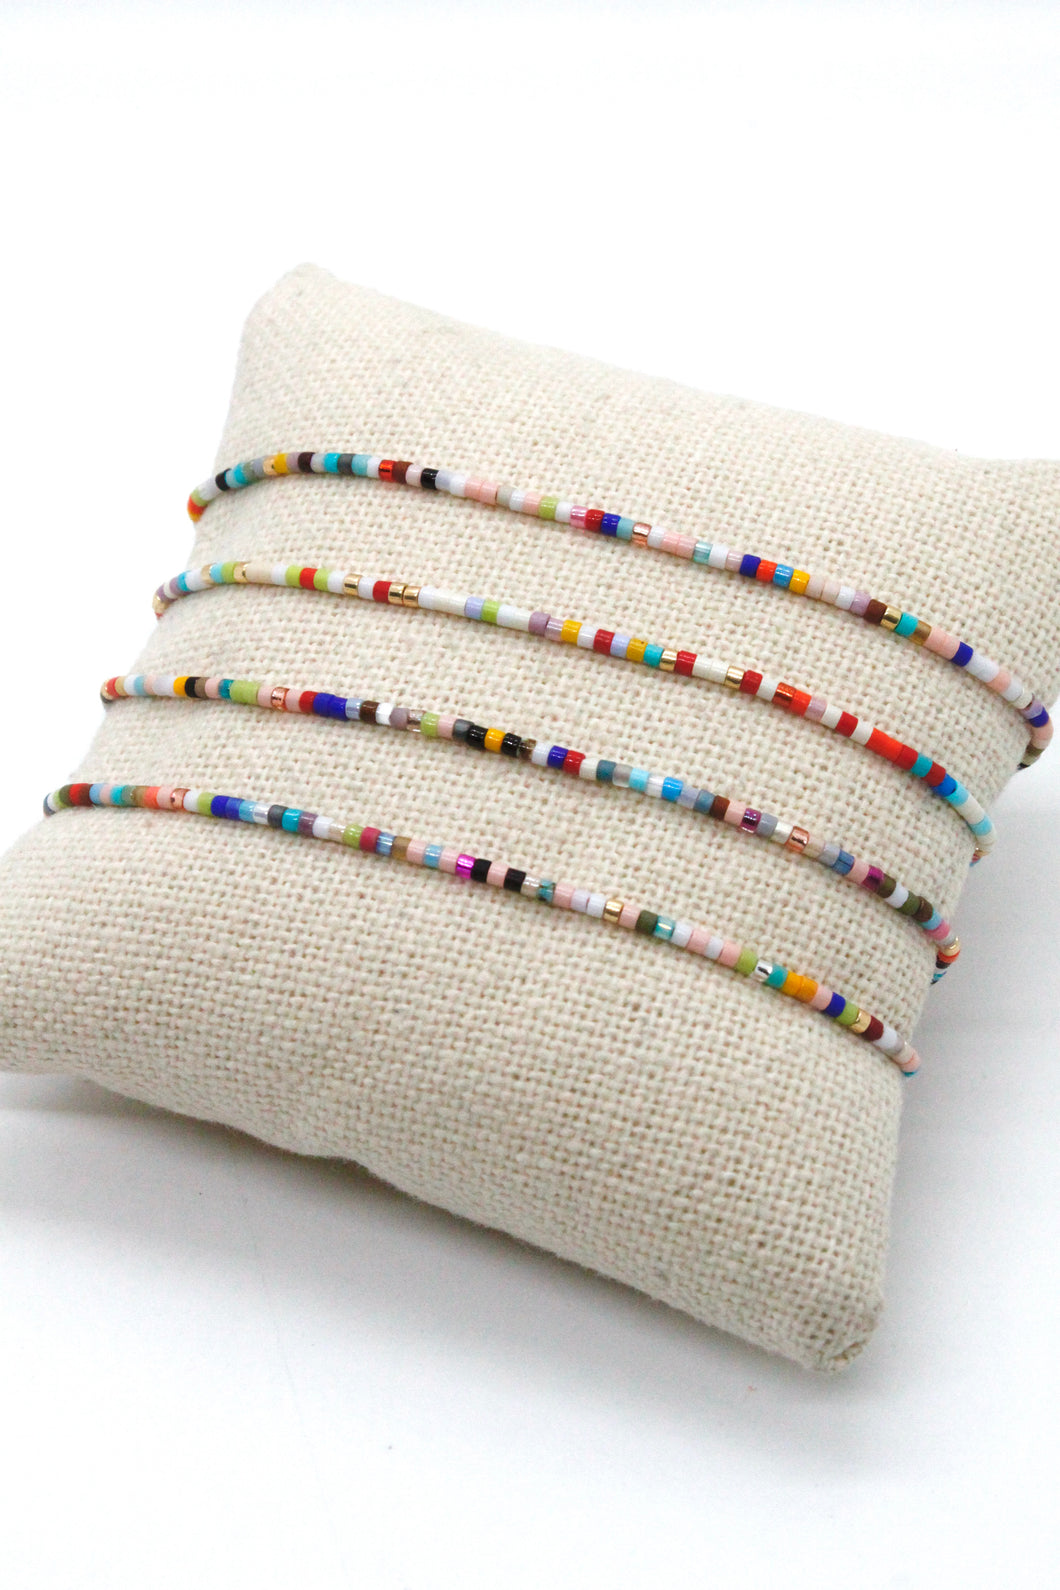 Mini Rainbow Miyuki Seed Bead Single Adjustable Bracelet -Seeds Collection- B8-013